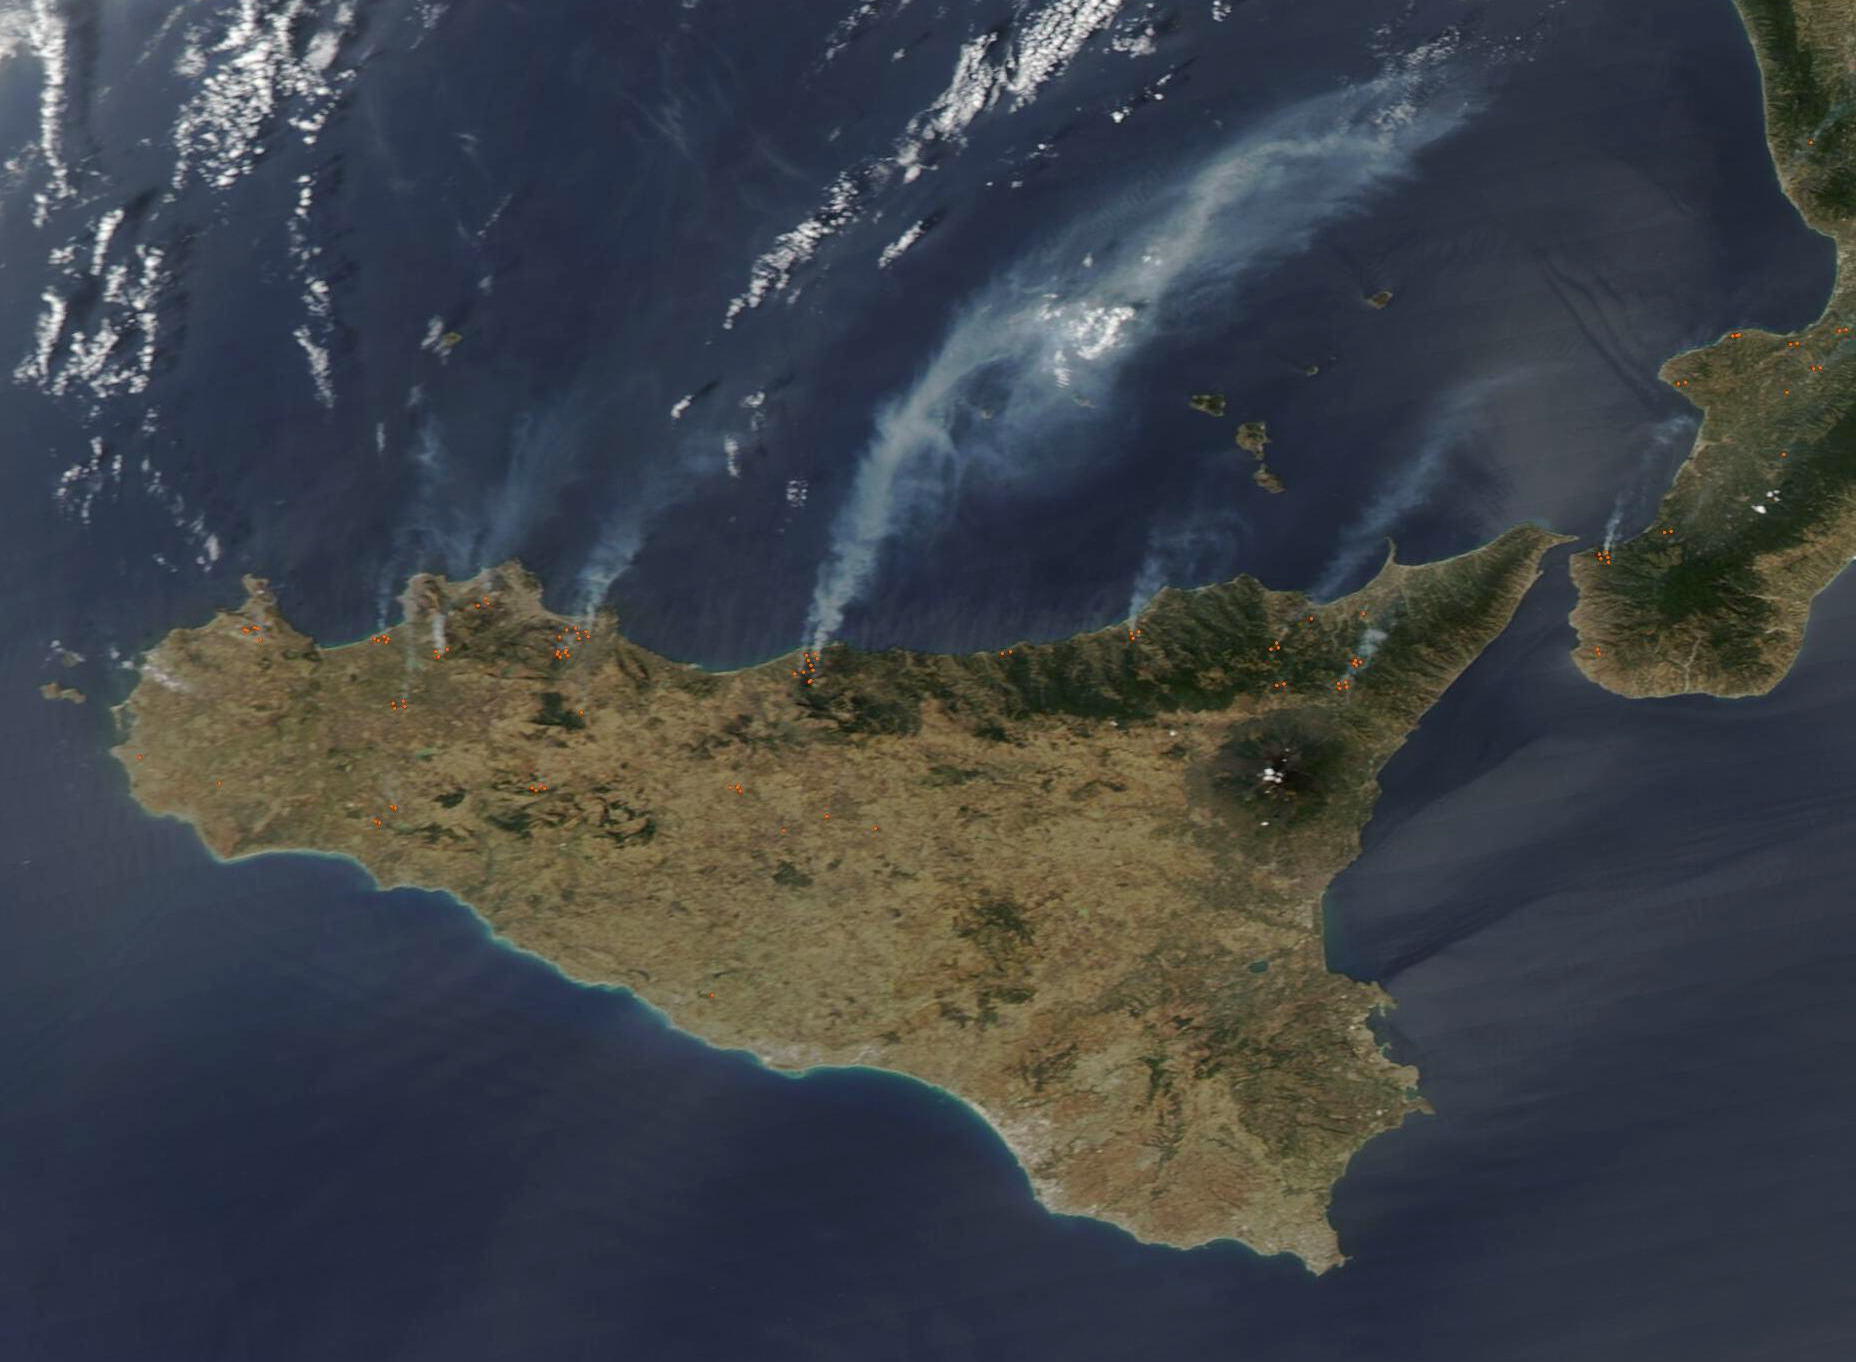 Silný vítr a vysoké teploty napomohly na konci září šíření lesních požárů podél severního pobřeží Sicílie. Snímek družice Aqua z 22. září s červeně zvýrazněnými ohnisky ukazuje kouř směřující z ohněm zasažených míst nad Středozemní moře. Největší počet požárů postihl oblast u města Cefalù. V nedalekém Gratteri musely být uzavřeny školy.